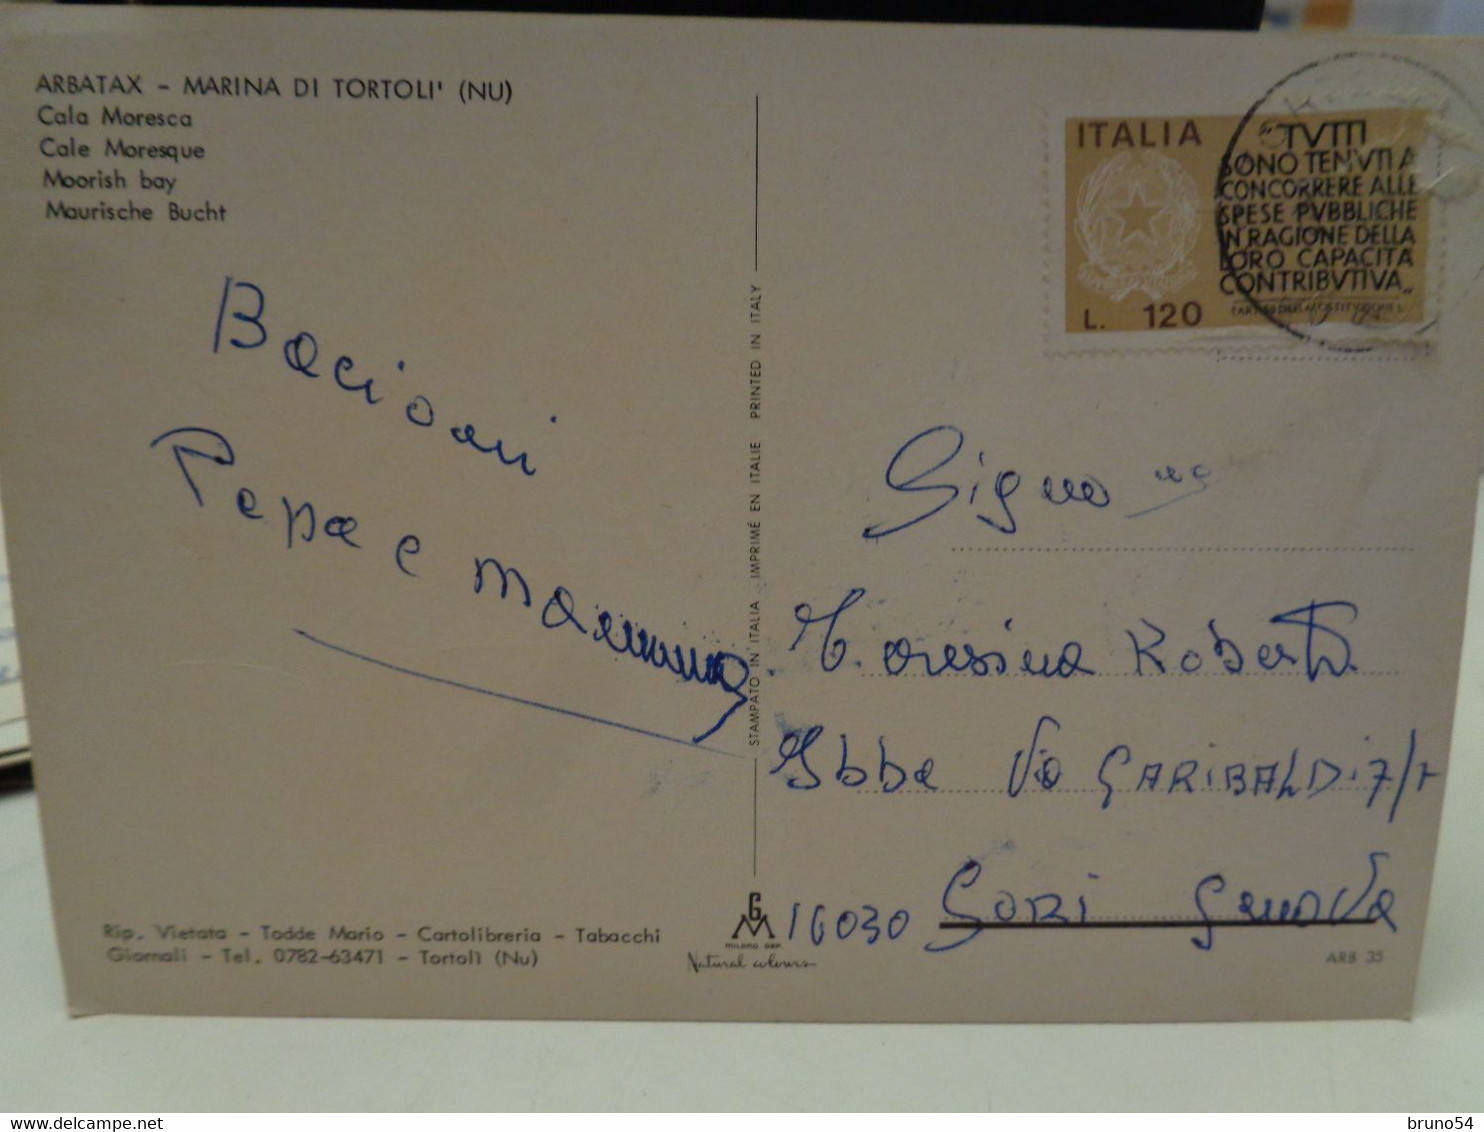 Cartolina Arbatax Frazione Del Comune Di Tortolì, In Provincia Di Nuoro Vedutine Cala Moresca, Marina Di Tortoli - Nuoro